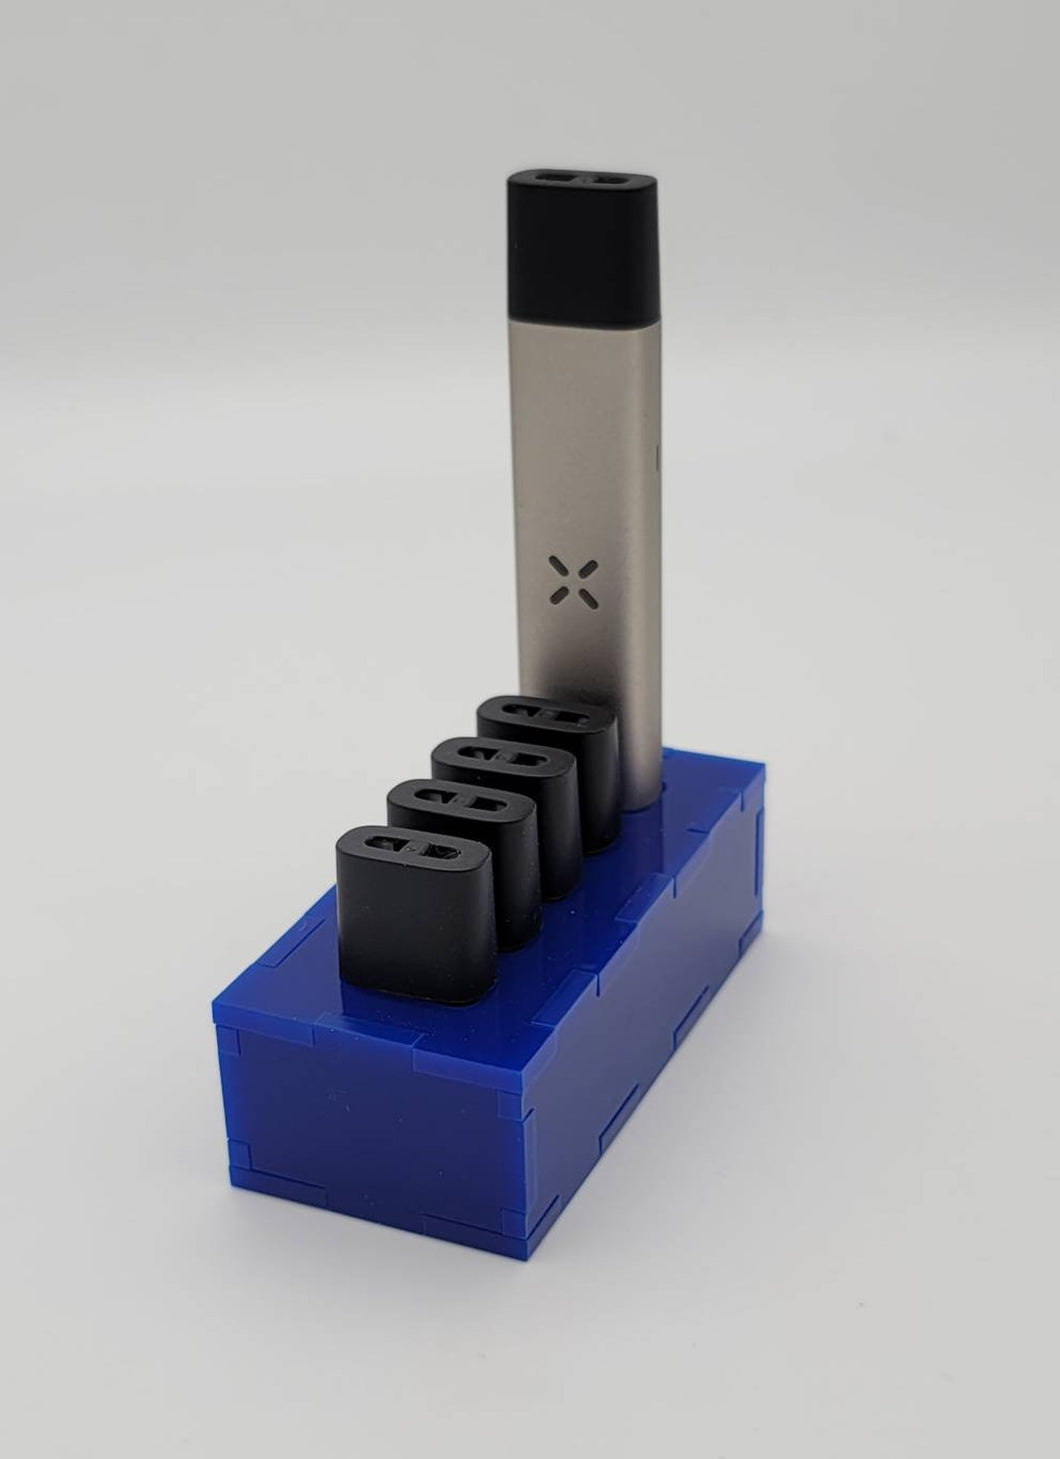 Acrylic Pax Era Pod and Battery Holder